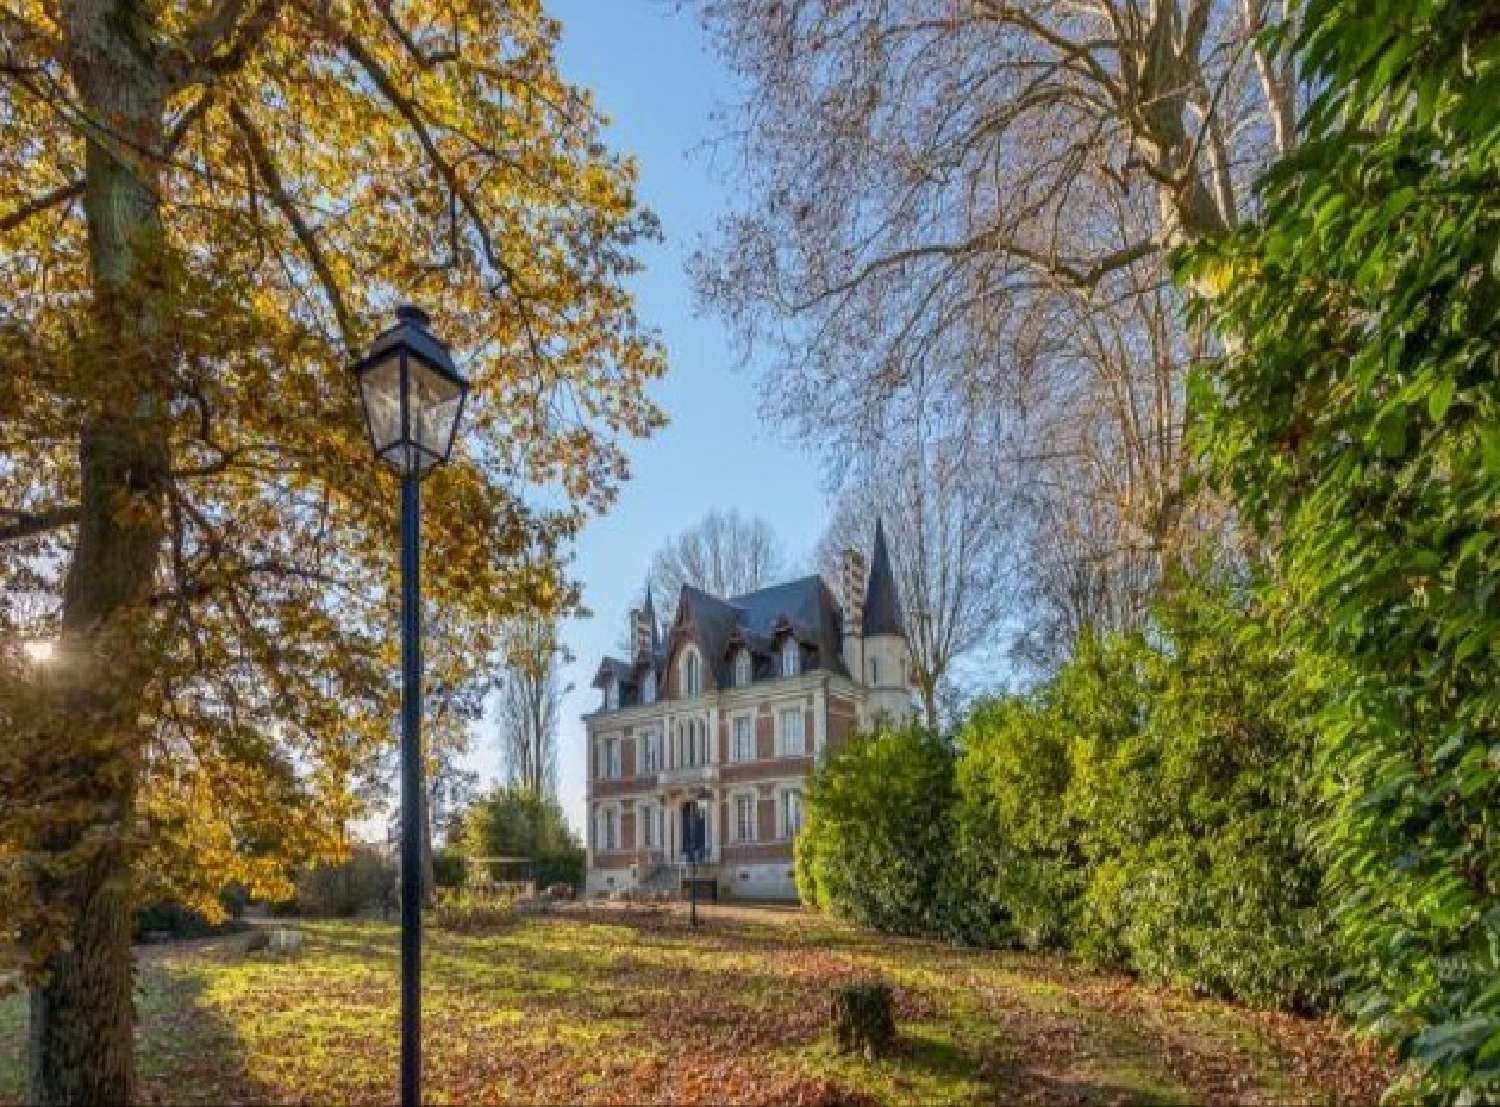  à vendre château Blois Loir-et-Cher 2